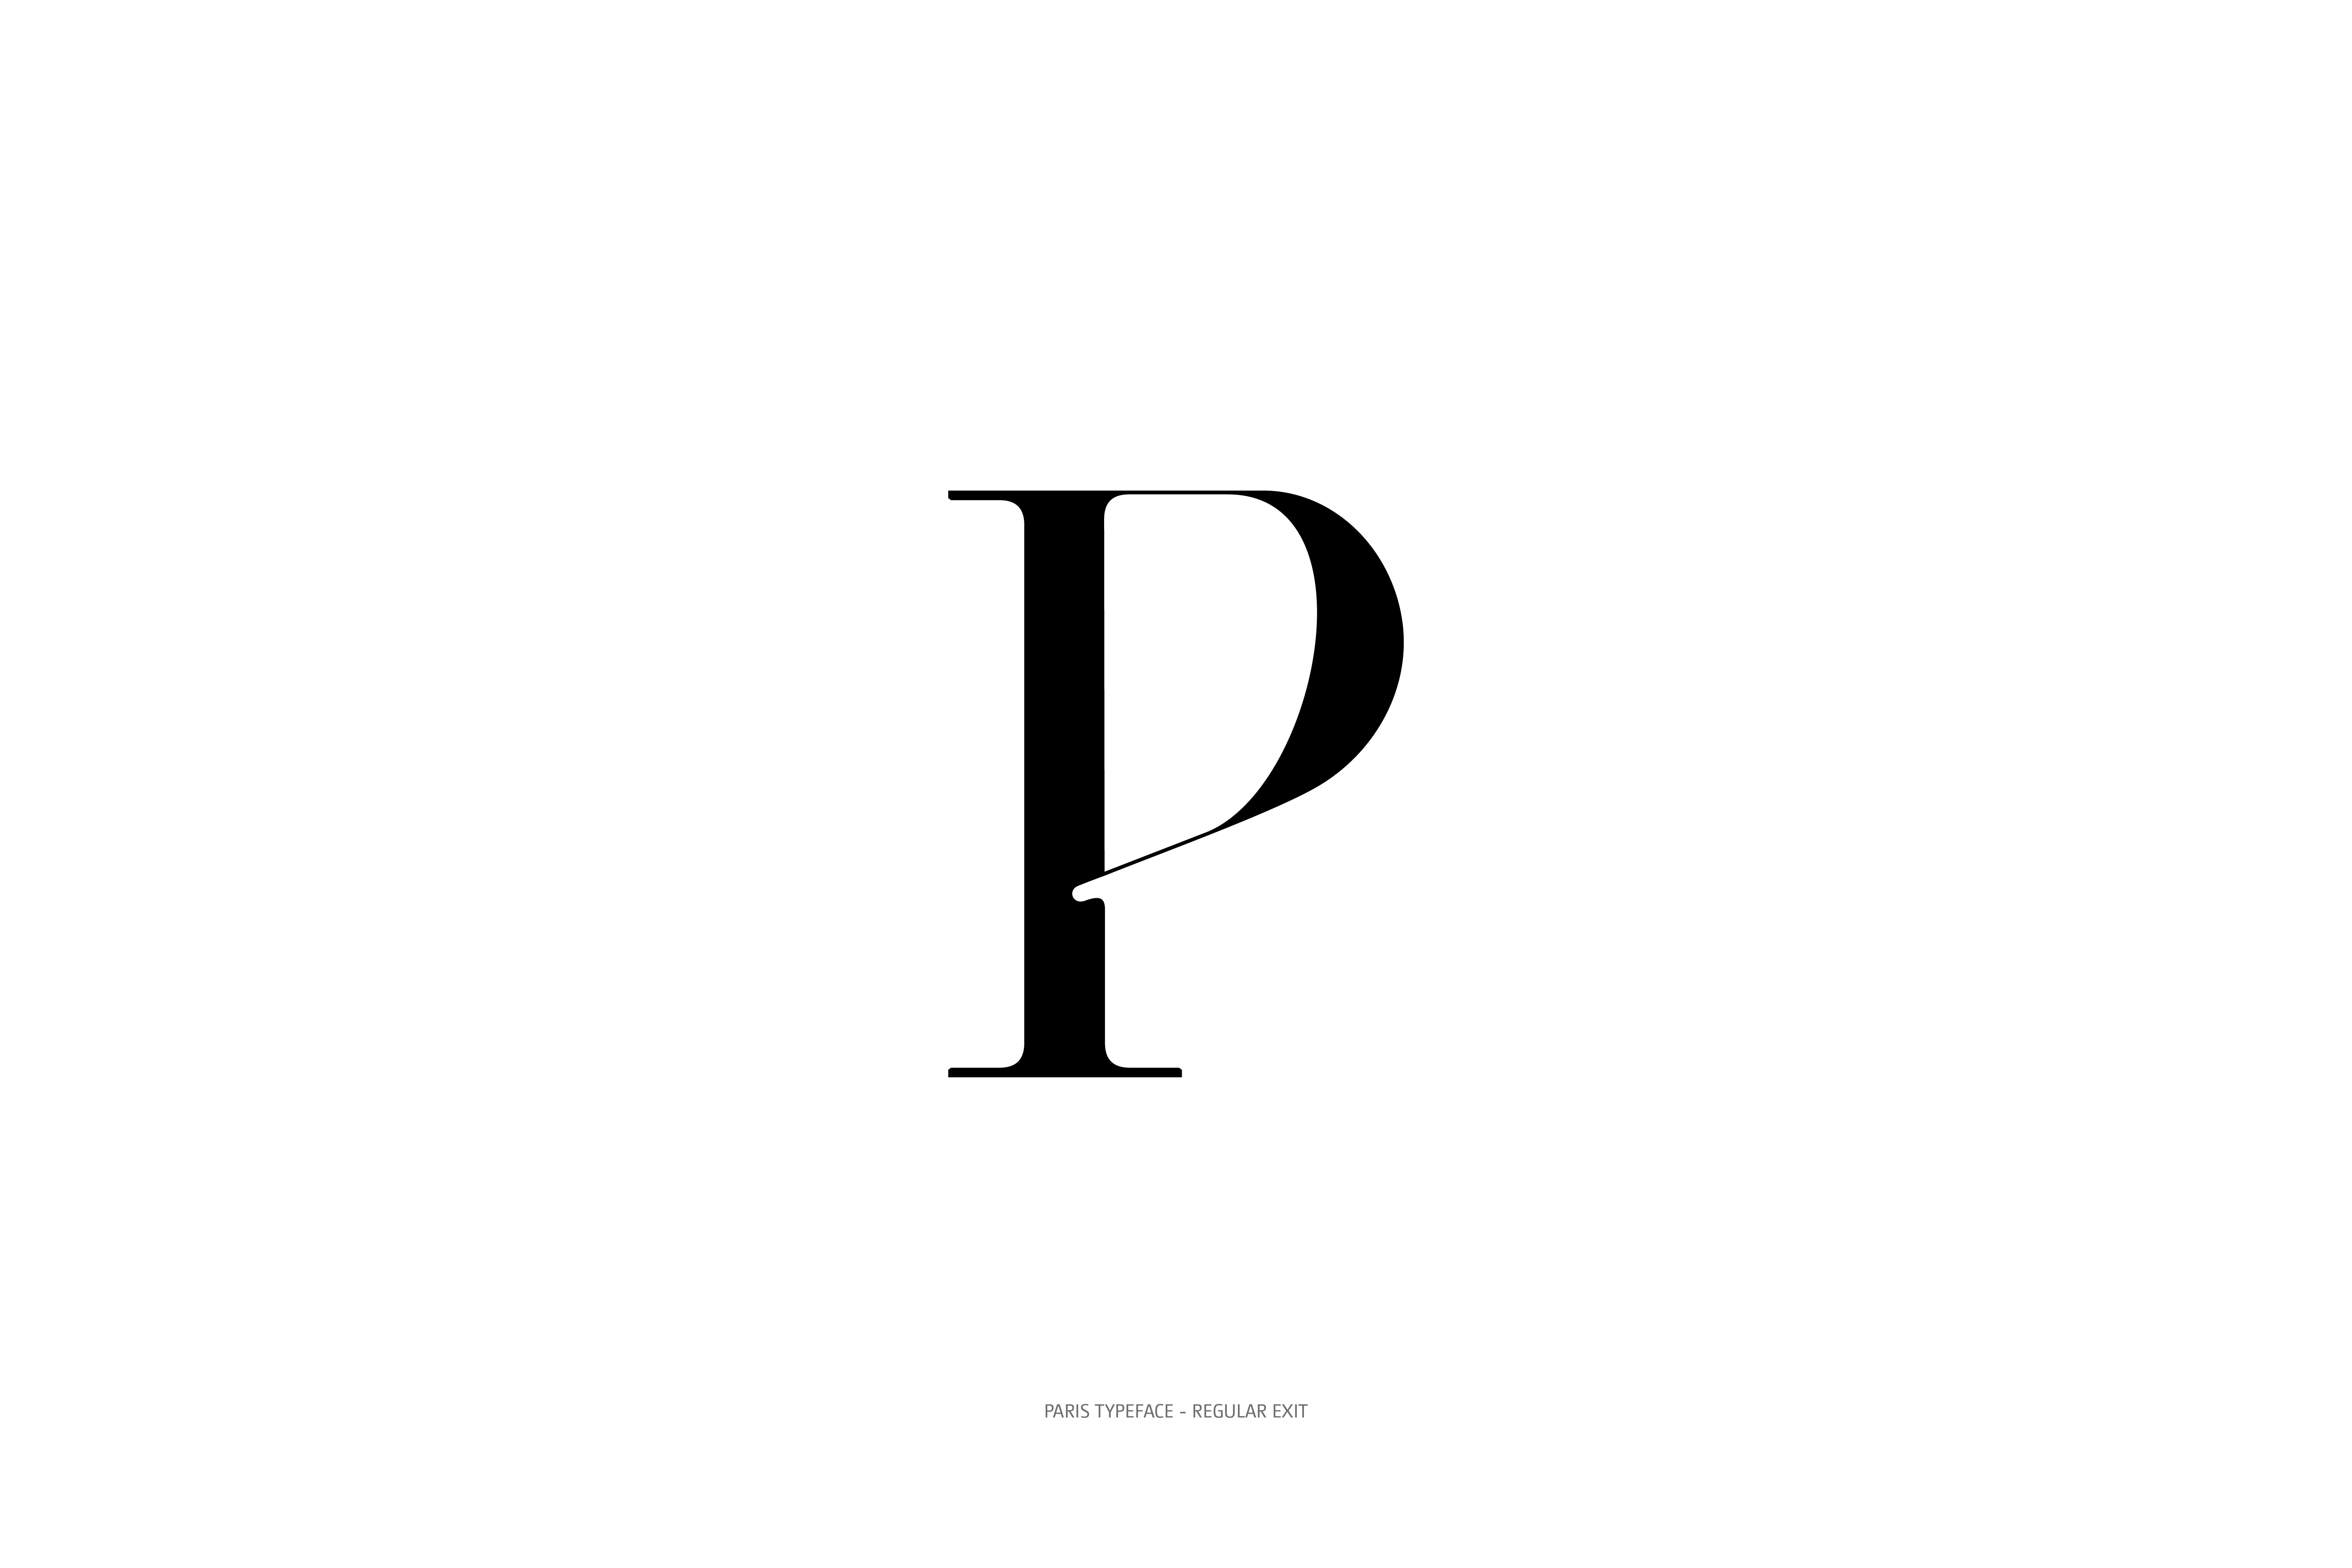 Paris Typeface Regular Exit P